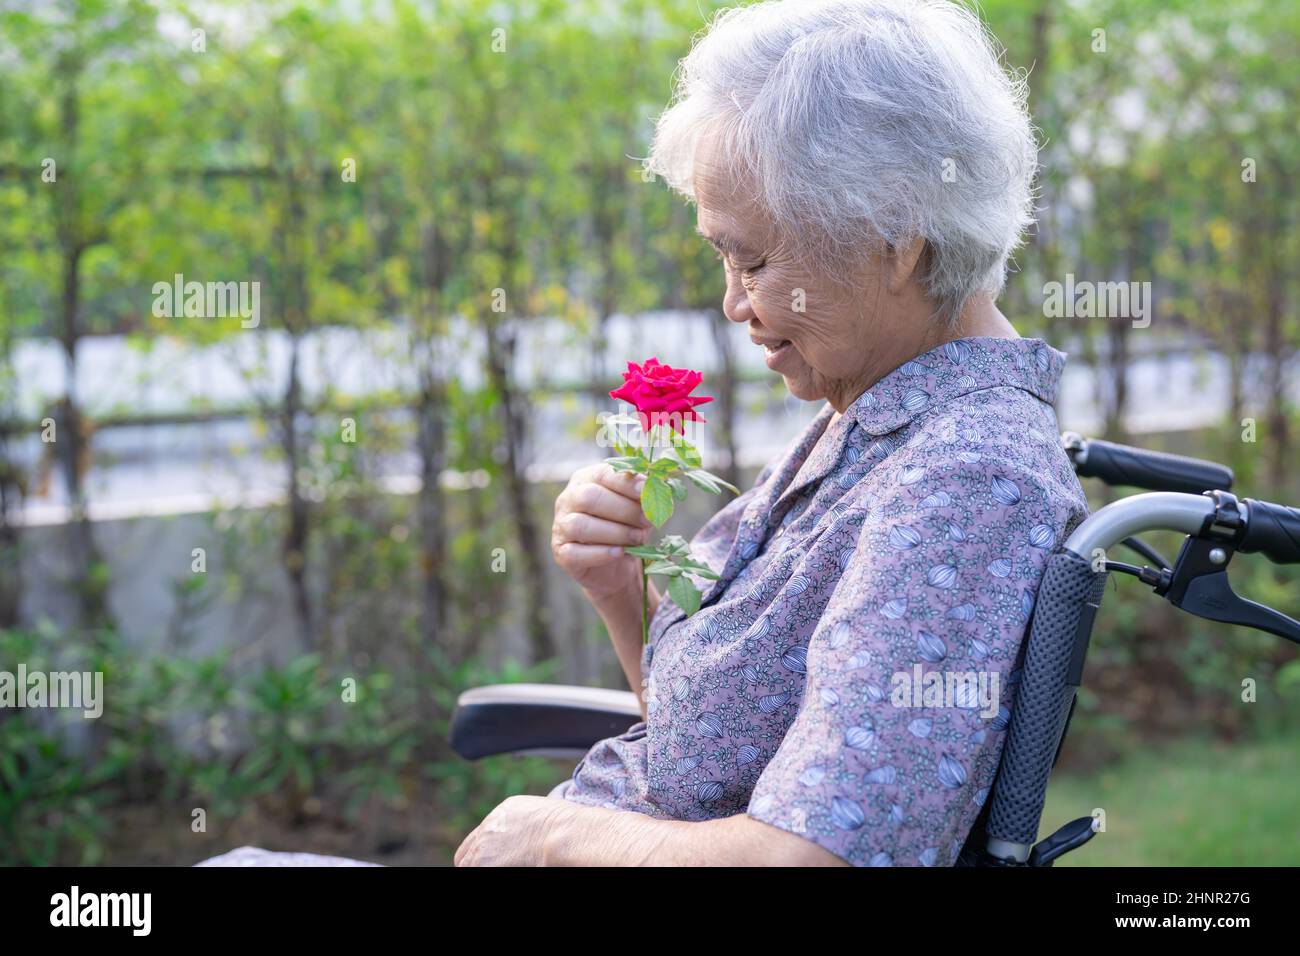 Asiatische ältere oder ältere alte Dame mit roter Rose, lächeln und glücklich im Rollstuhl im Park. Stockfoto